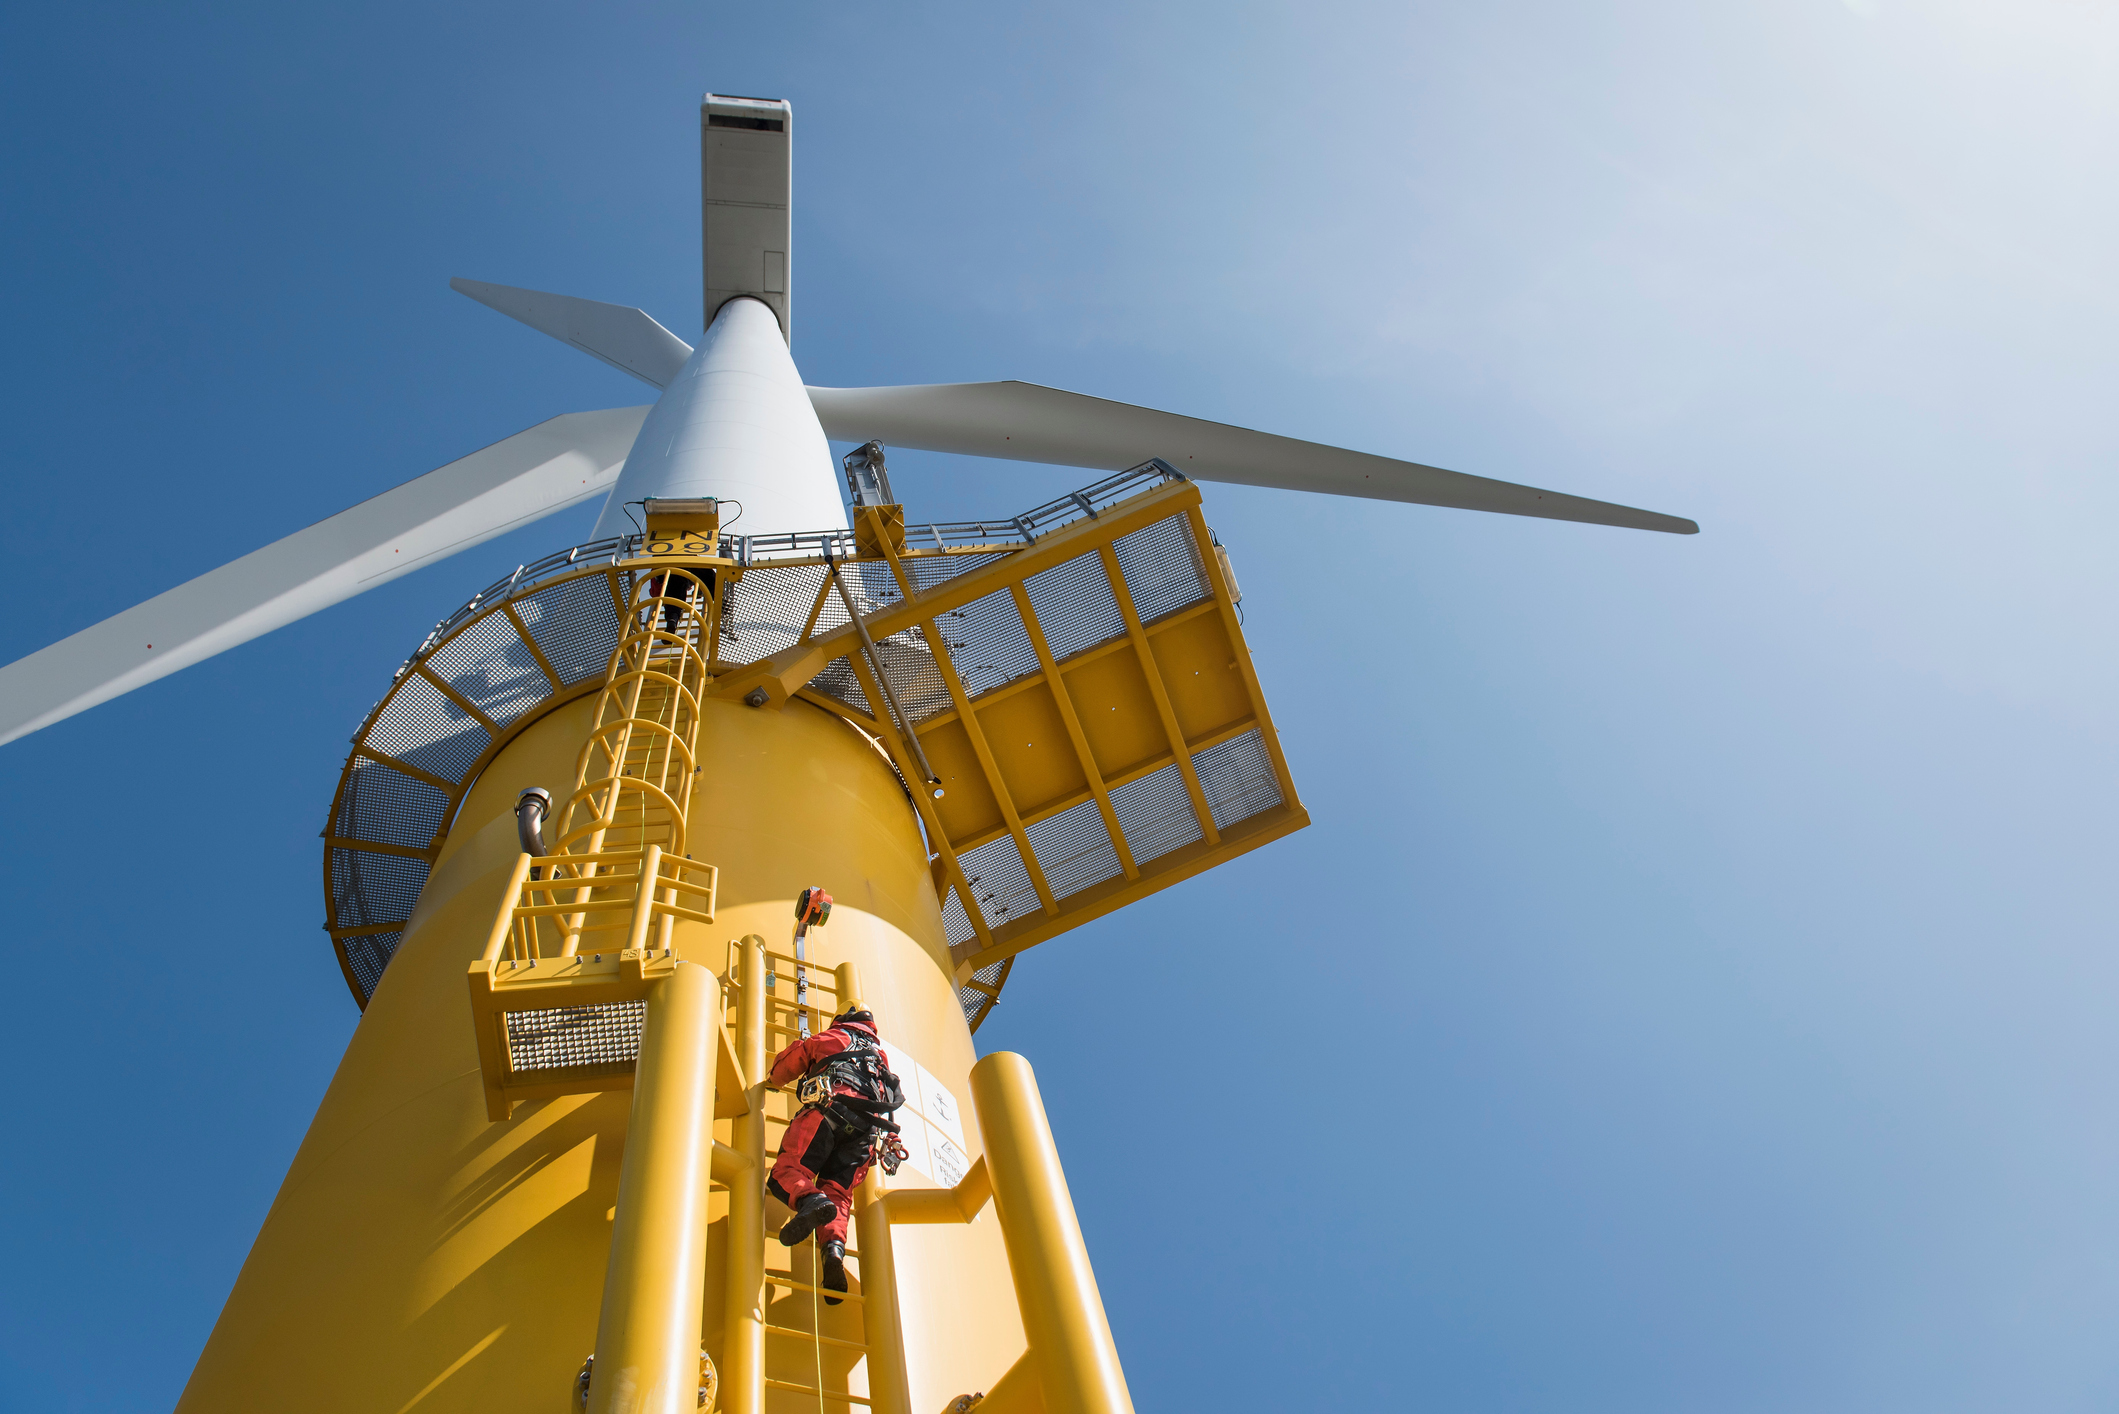 Engineer climbs on wind turbine